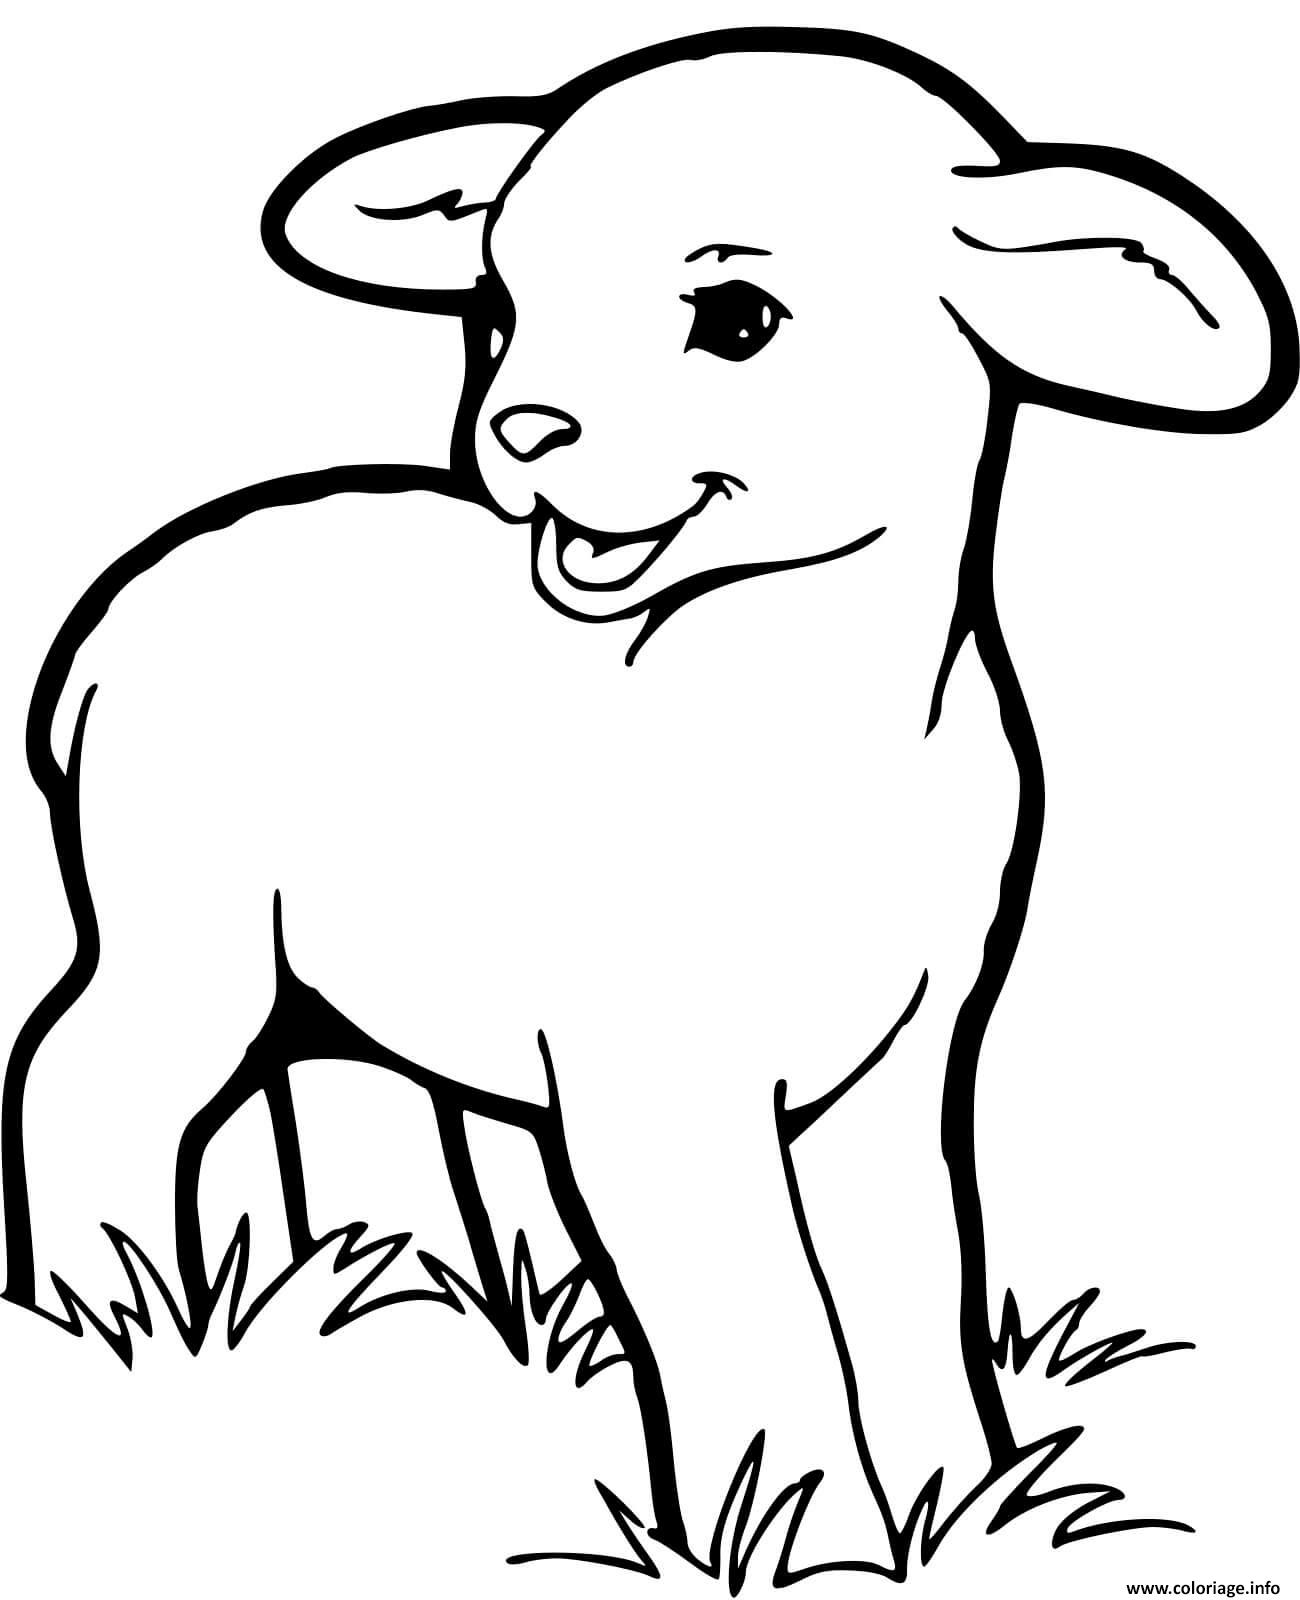 Coloriage Bebe Mouton Dessin Mouton À Imprimer encequiconcerne Coloriage Dessin Bebe